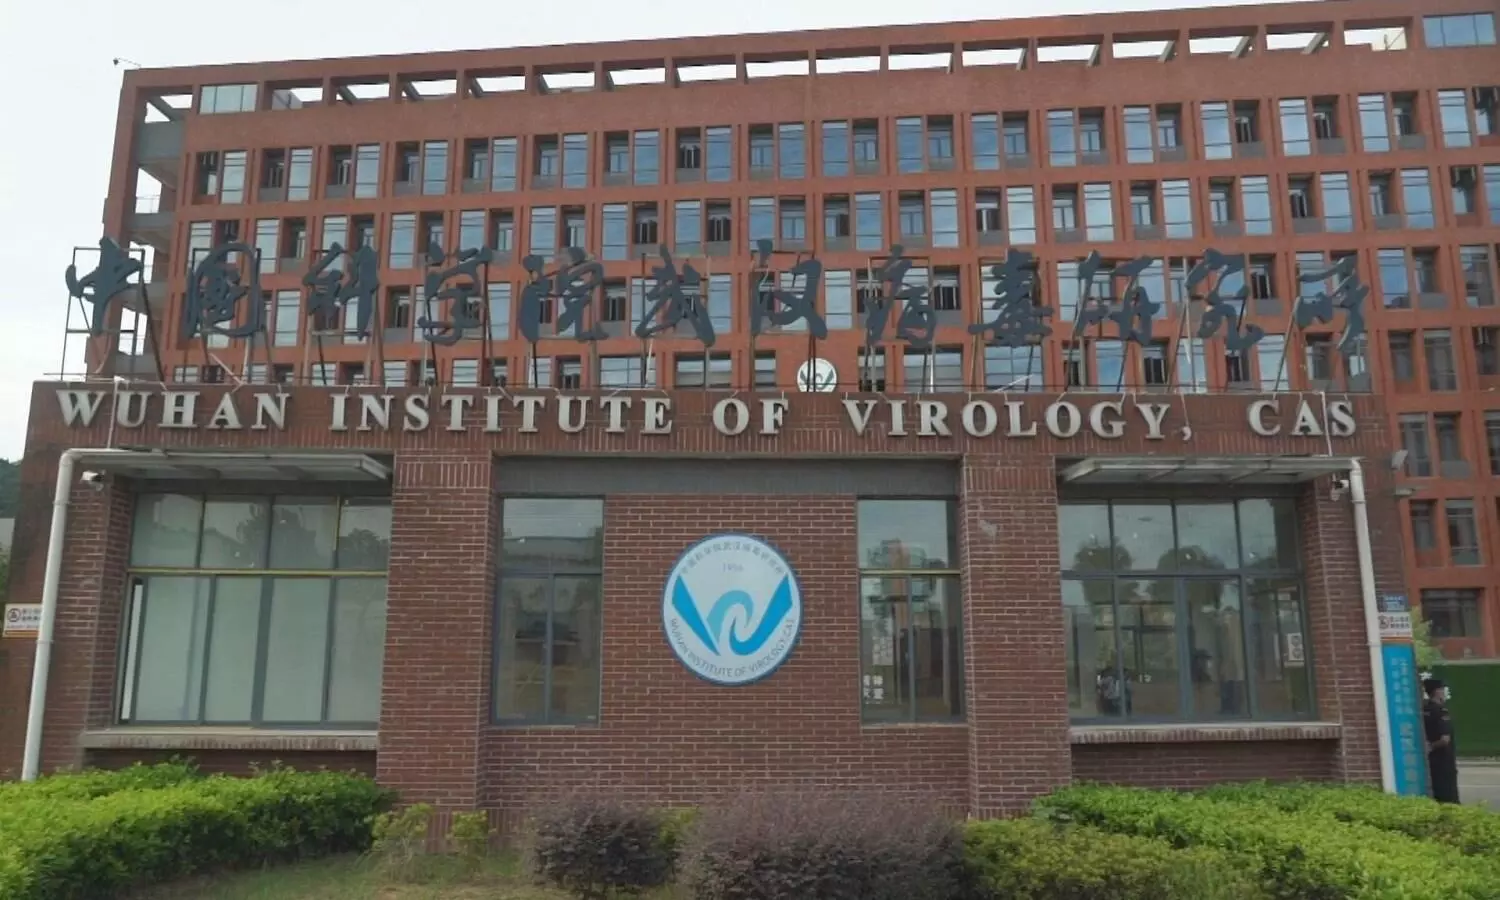 वुहान का वायरोलॉजी इंस्टीट्यूट कोरोना वायरस का मुख्य अनुसंधान केंद्र